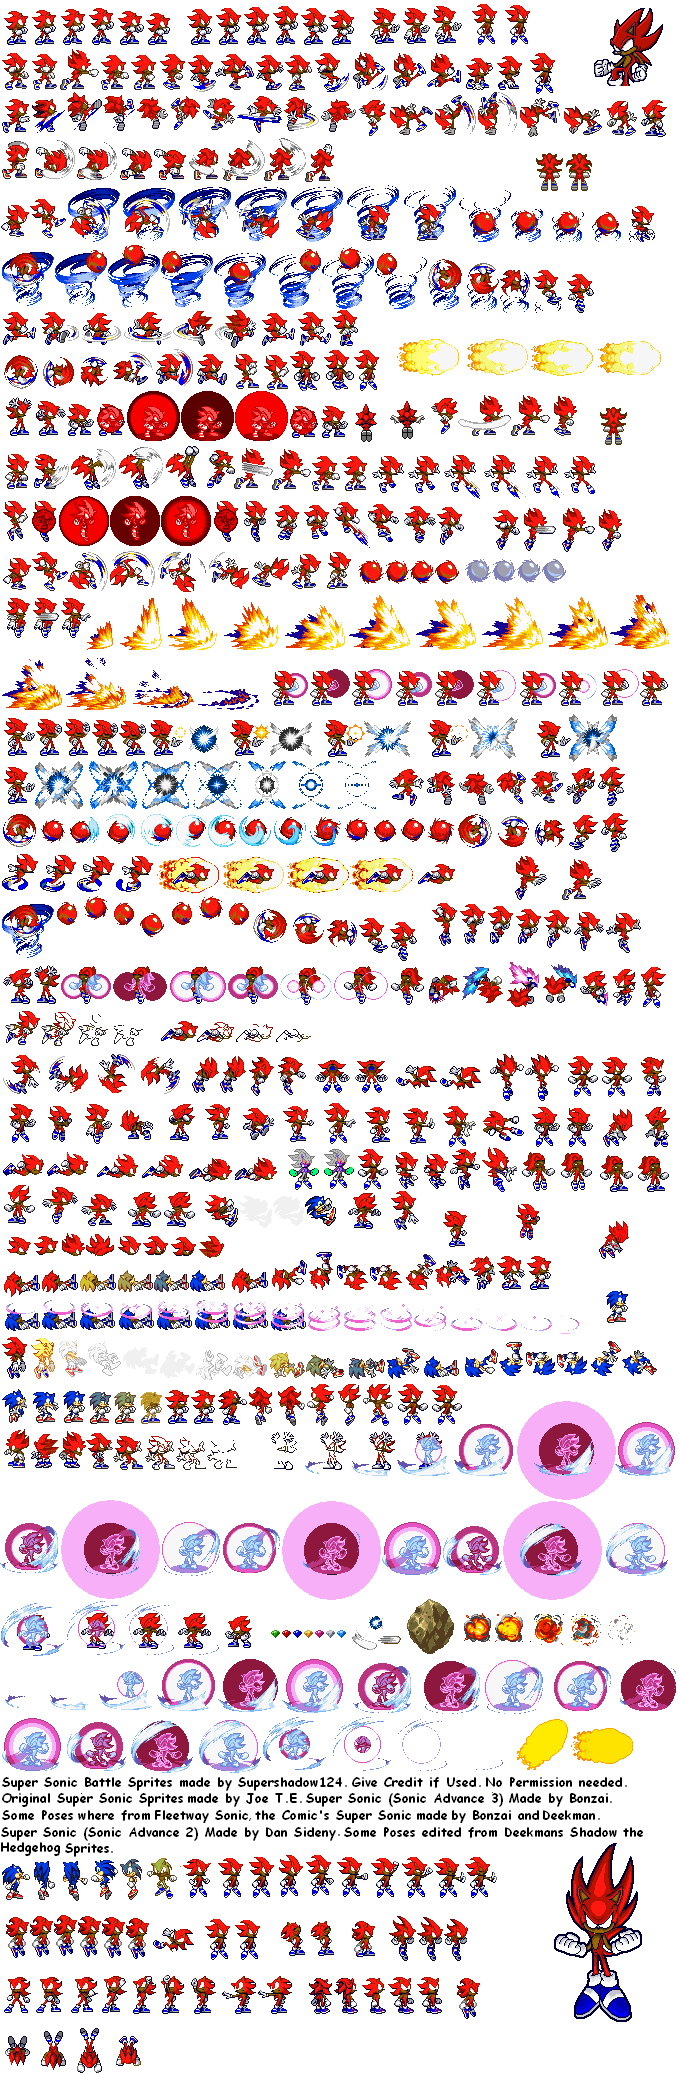 Hyper Sonic 2 Sprite Sheet by fnafan88888888 on DeviantArt